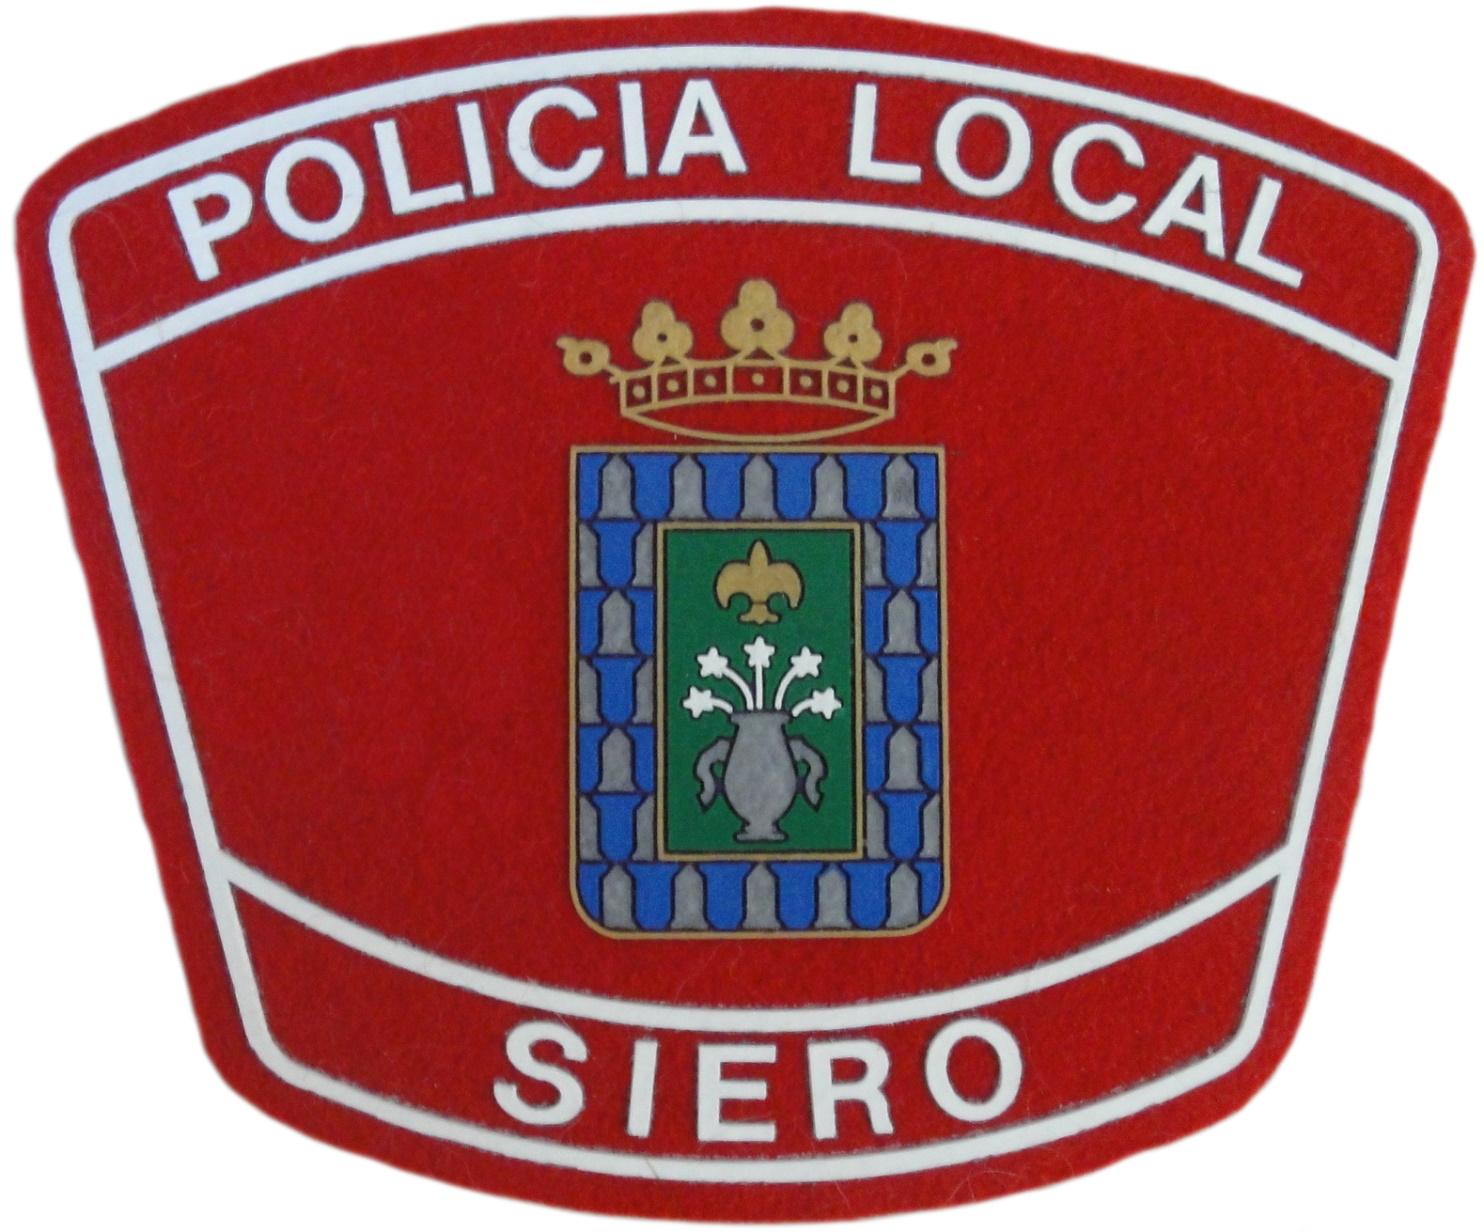 Policía Local Siero Asturias parche insignia emblema distintivo Police Dept